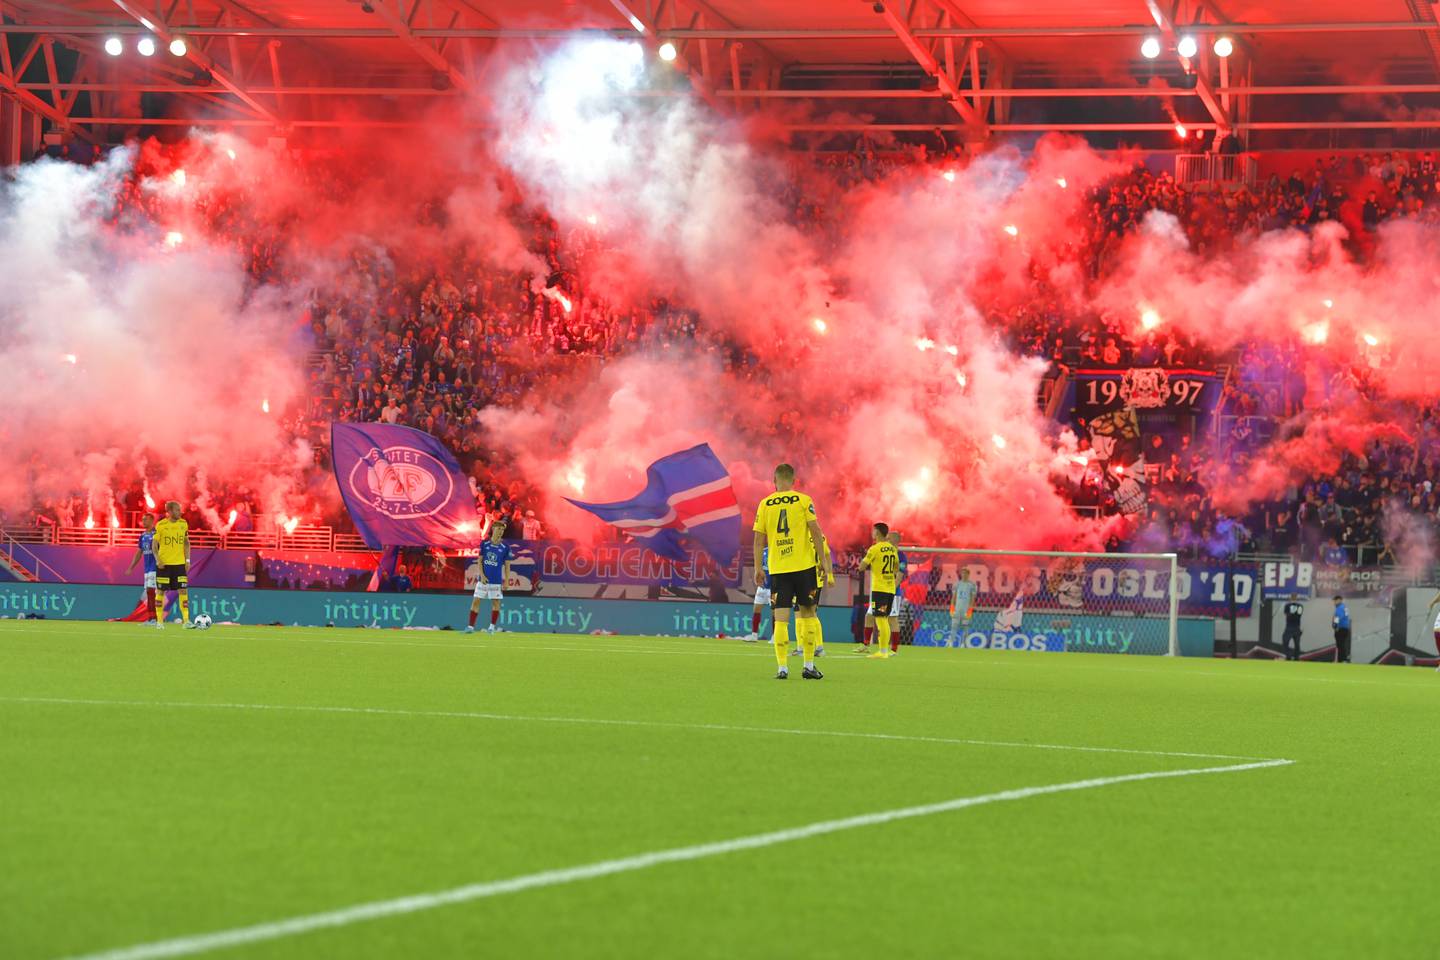 Det var fullsatt på tribunene under rivaloppgjøret mellom Vålerenga og Lillestrøm søndag. Foto: Annika Byrde / NTB